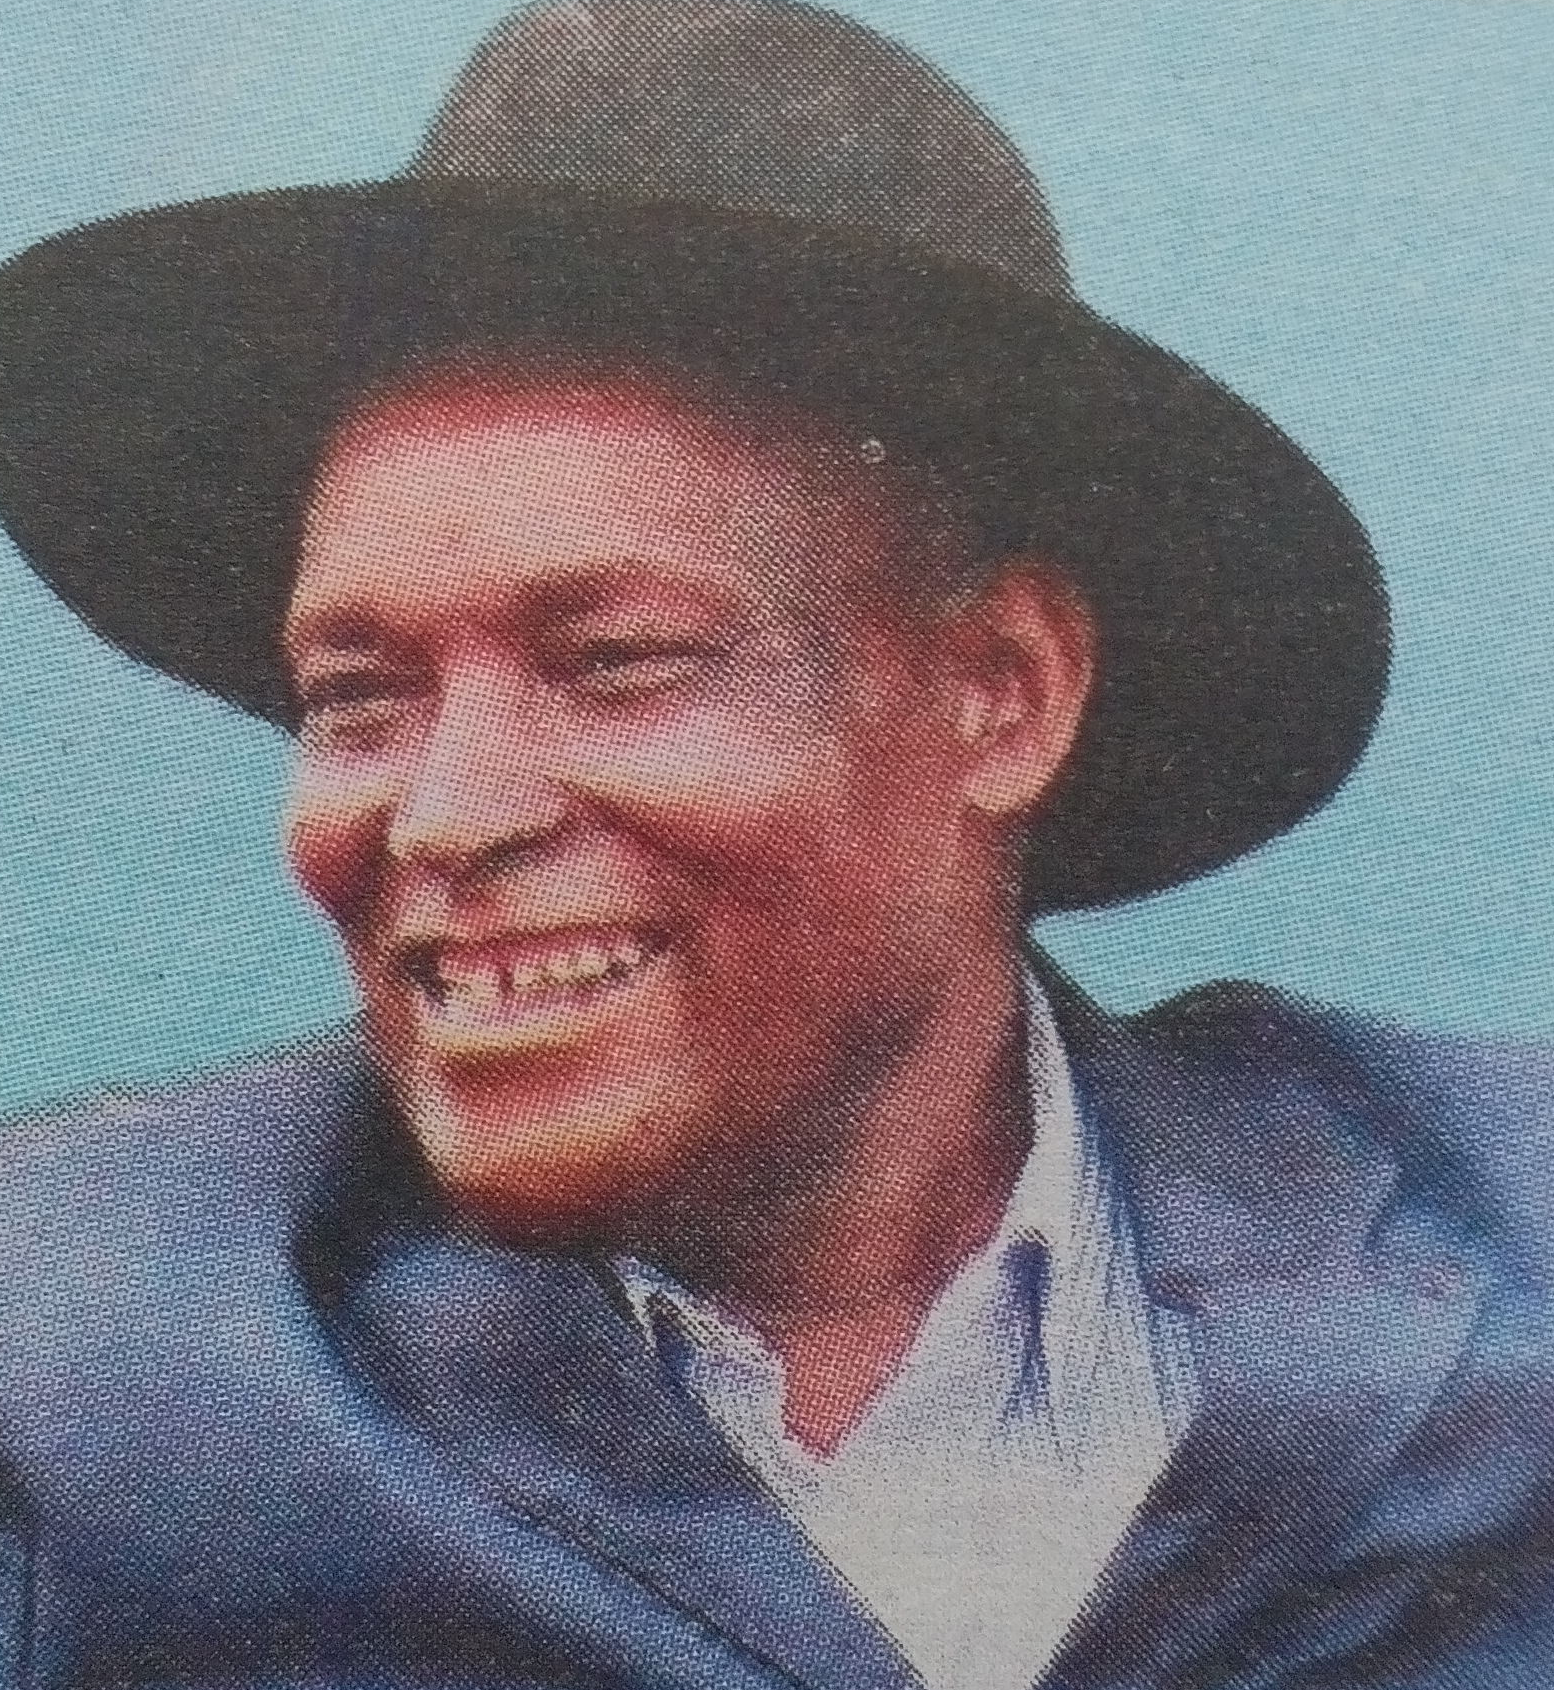 Obituary Image of John Ngugi Kuria (Mrefu)